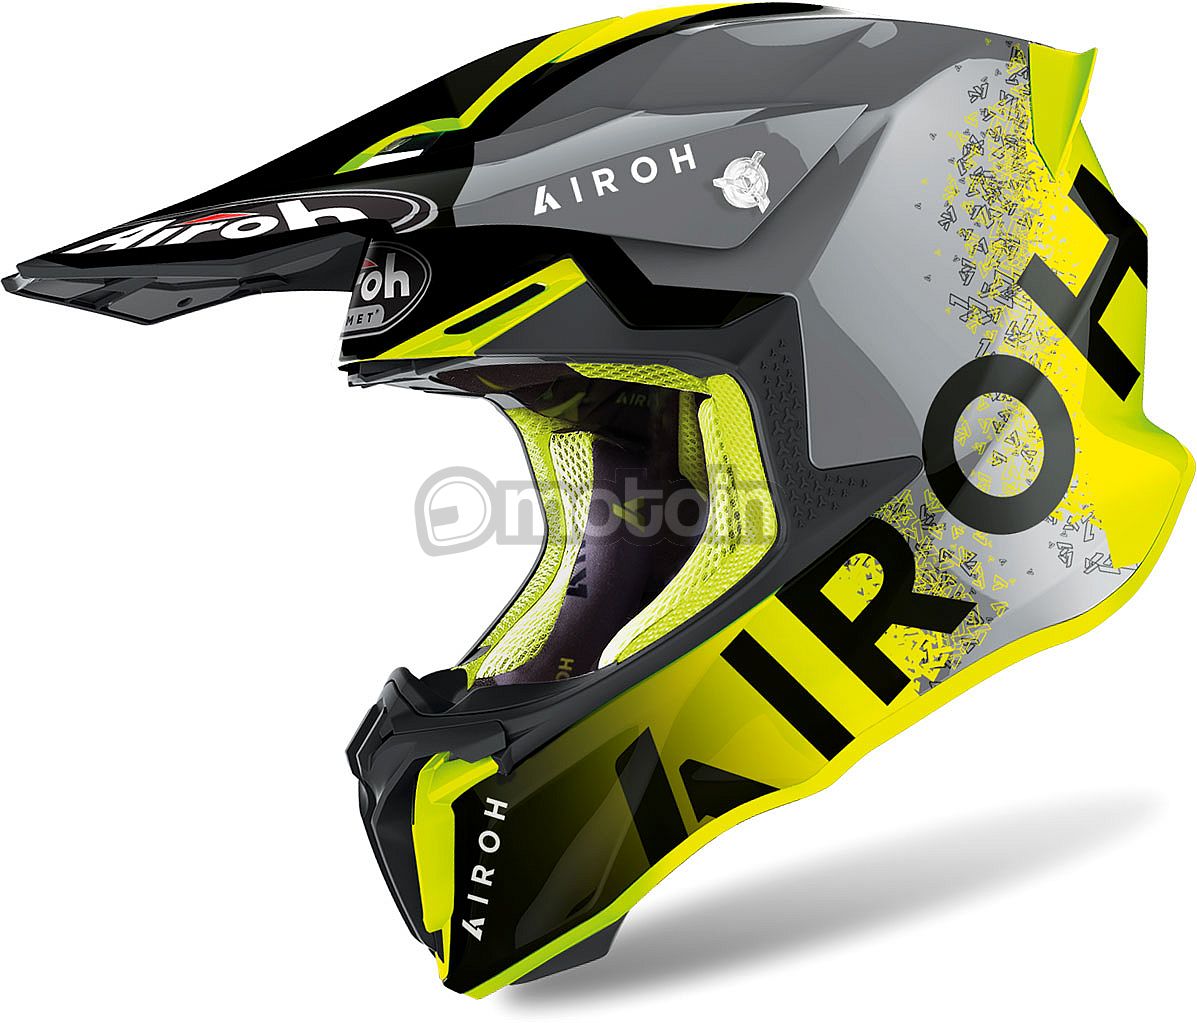 Airoh Twist 2.0 Bit, motocross helmet